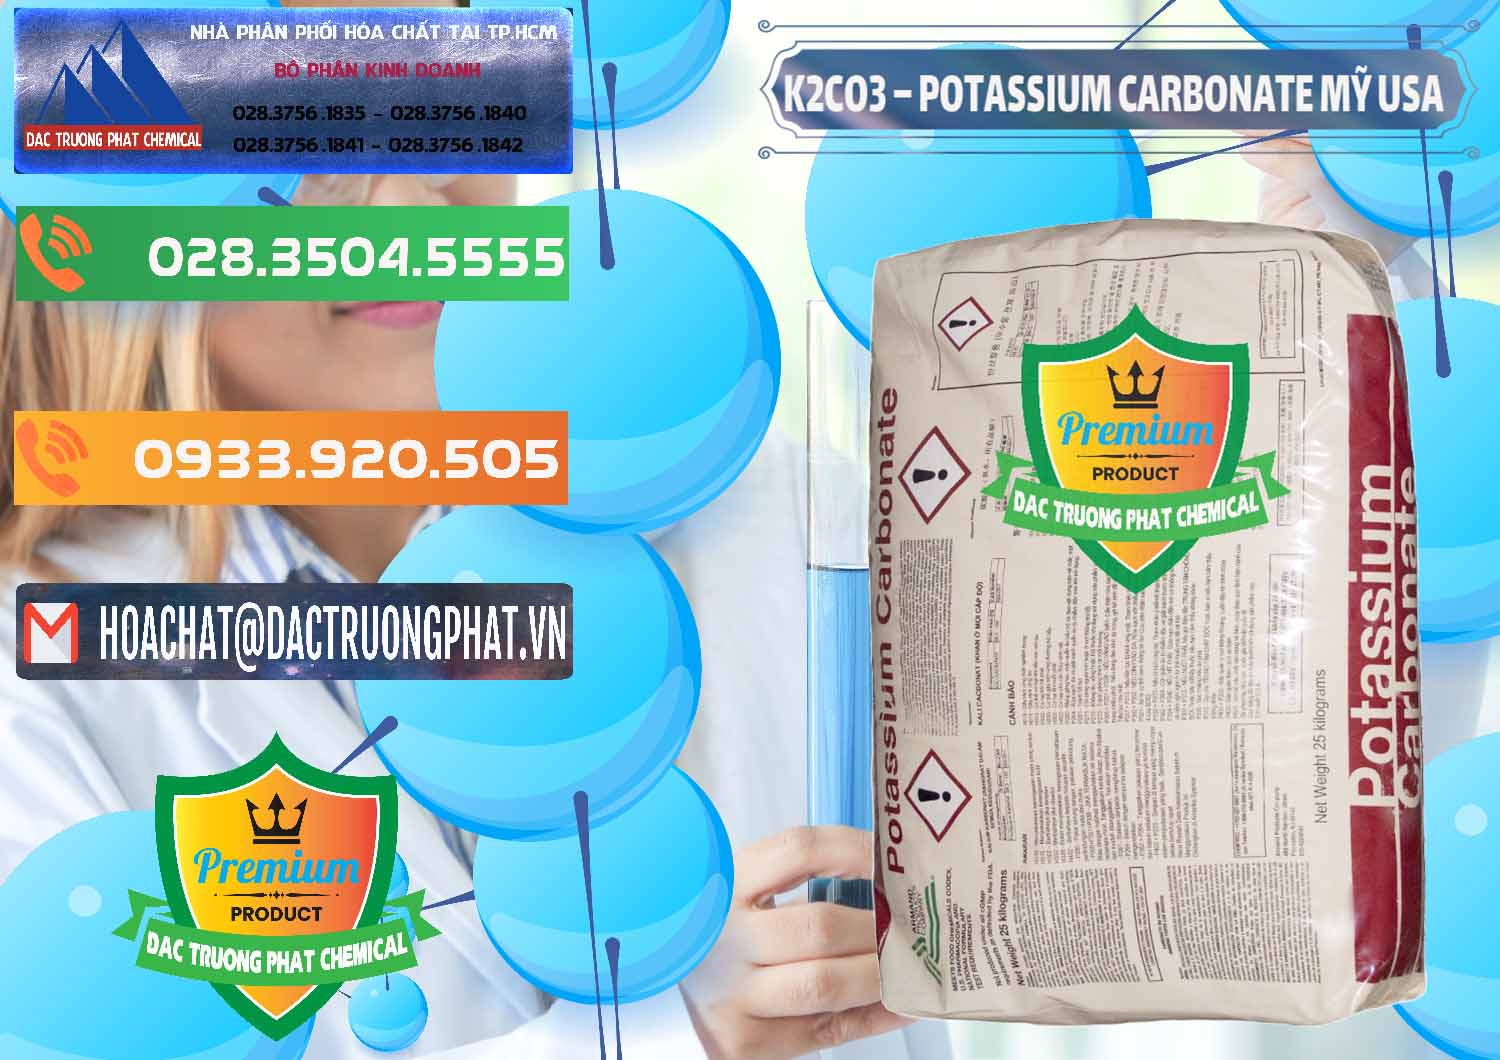 Công ty chuyên phân phối - bán K2Co3 – Potassium Carbonate Mỹ USA - 0082 - Nơi chuyên kinh doanh ( phân phối ) hóa chất tại TP.HCM - hoachatxulynuoc.com.vn